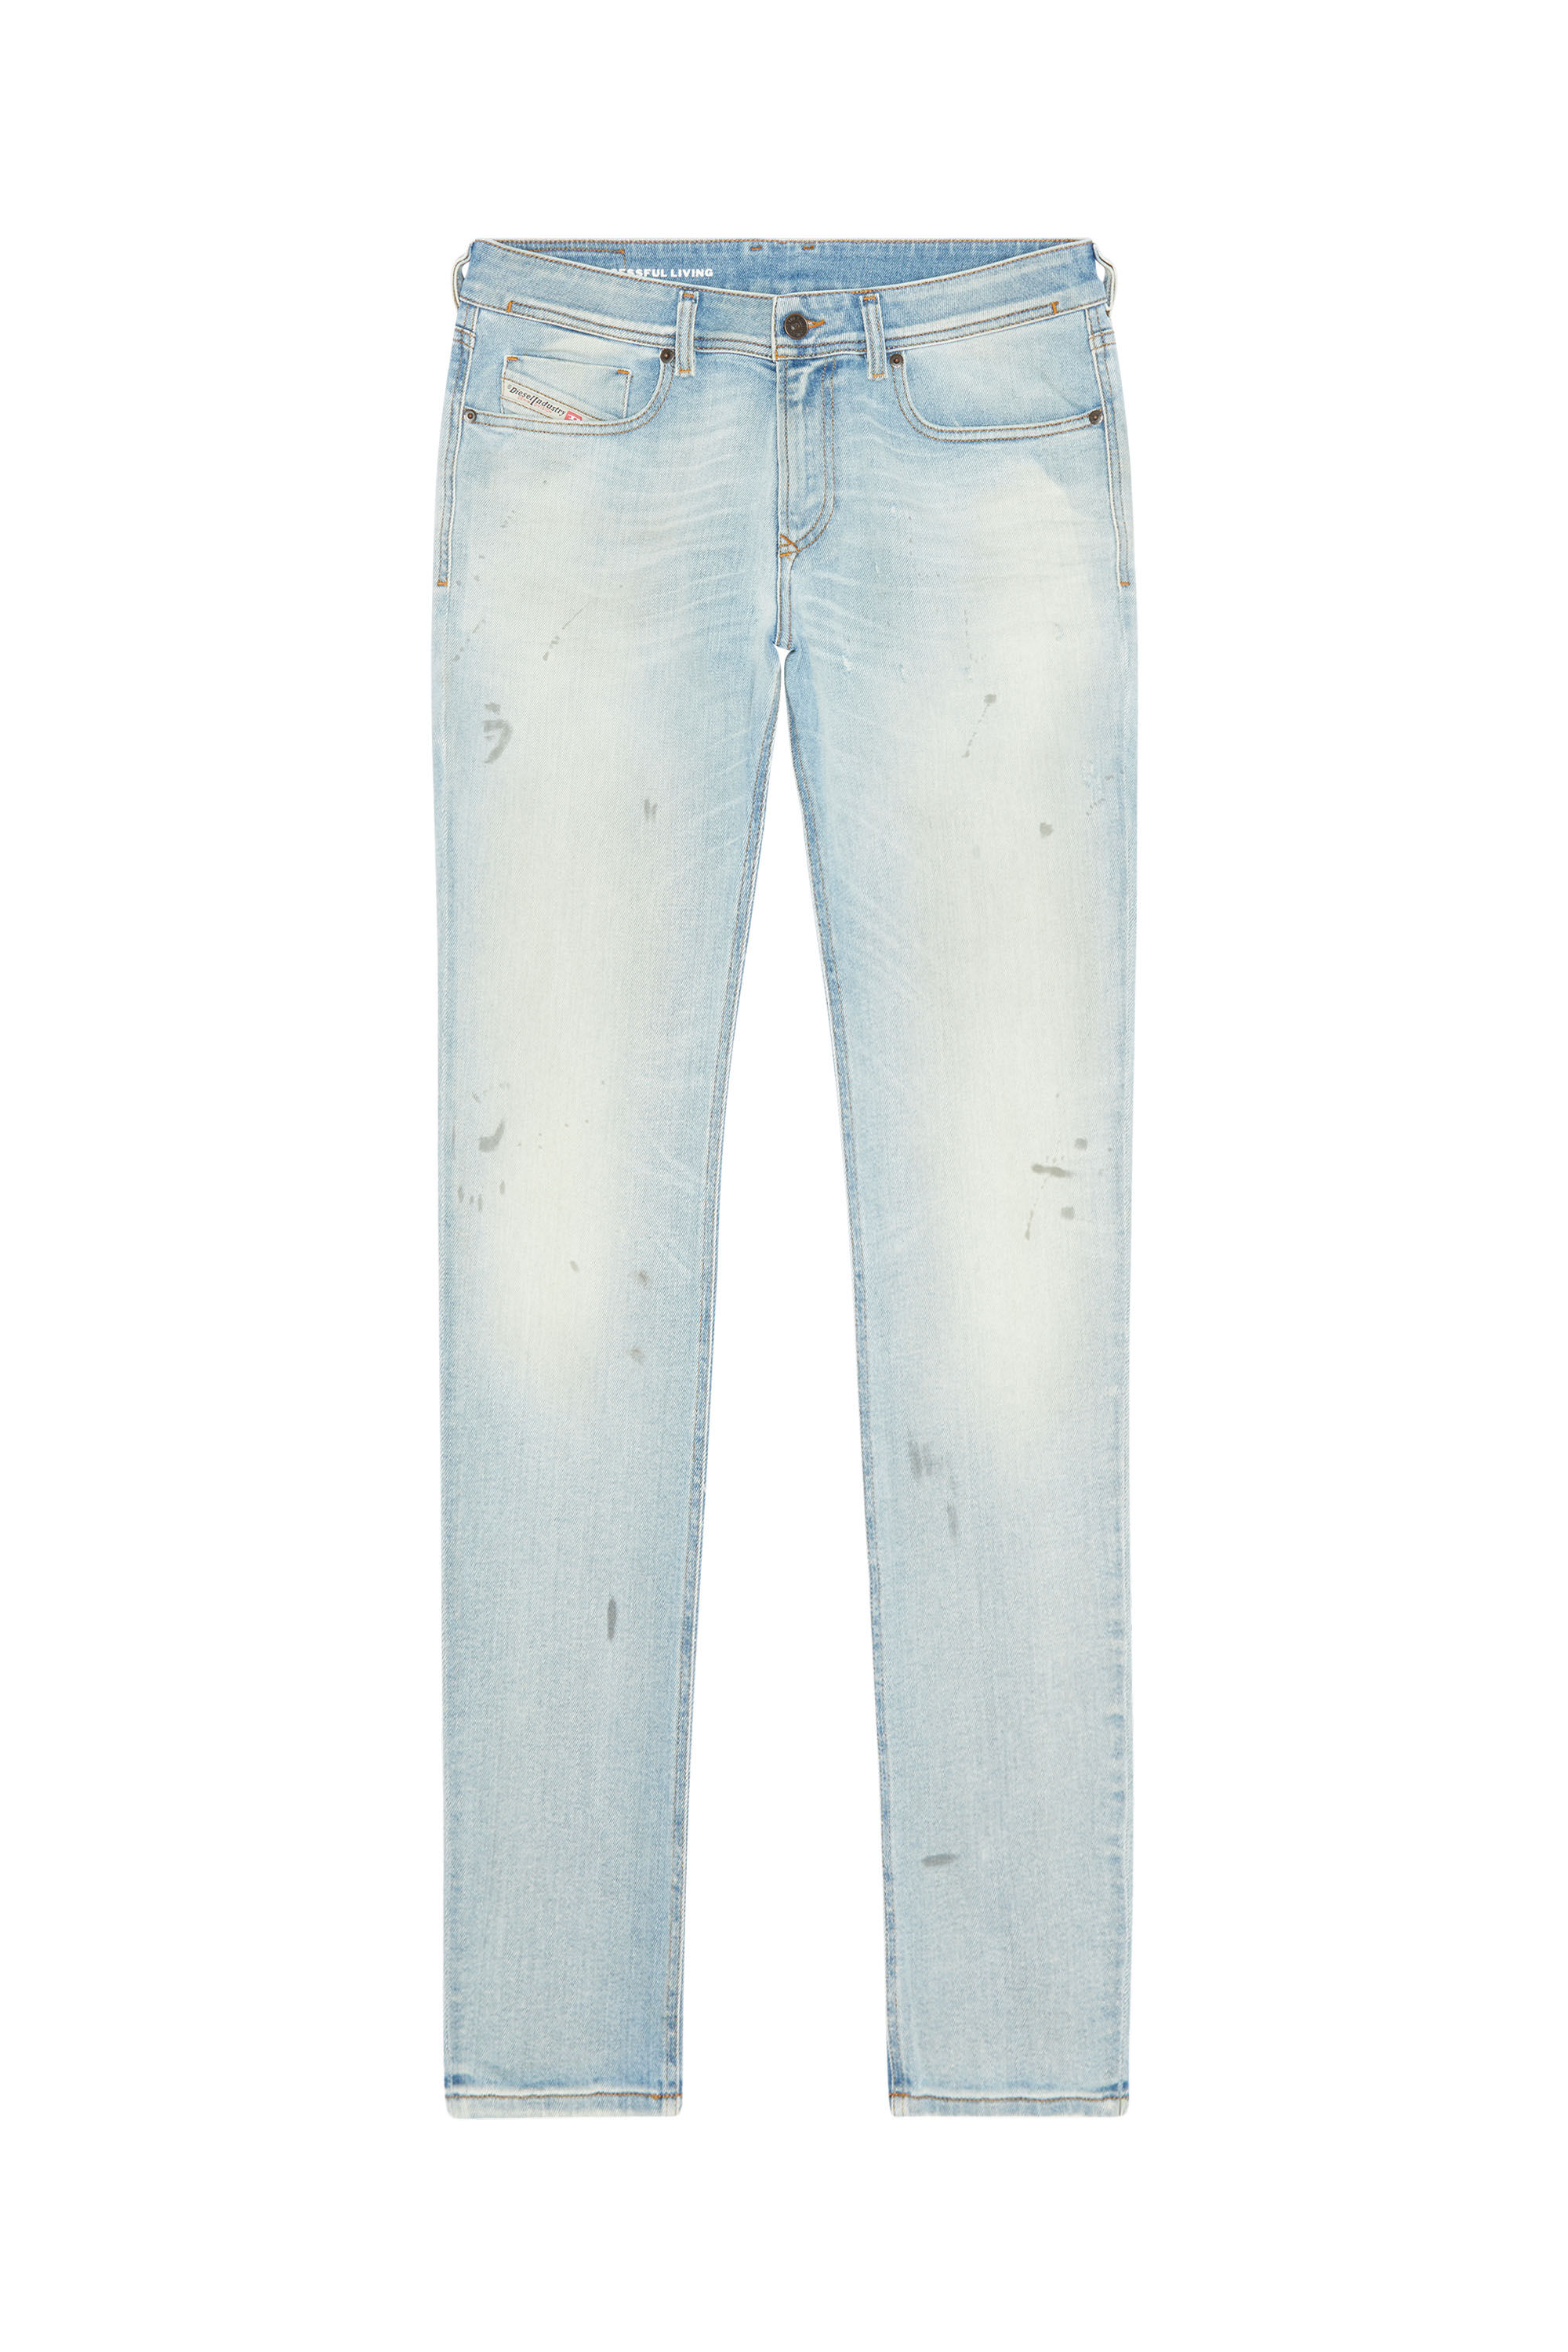 Diesel - Skinny Jeans 1979 Sleenker 09E89, Light Blue - Image 2